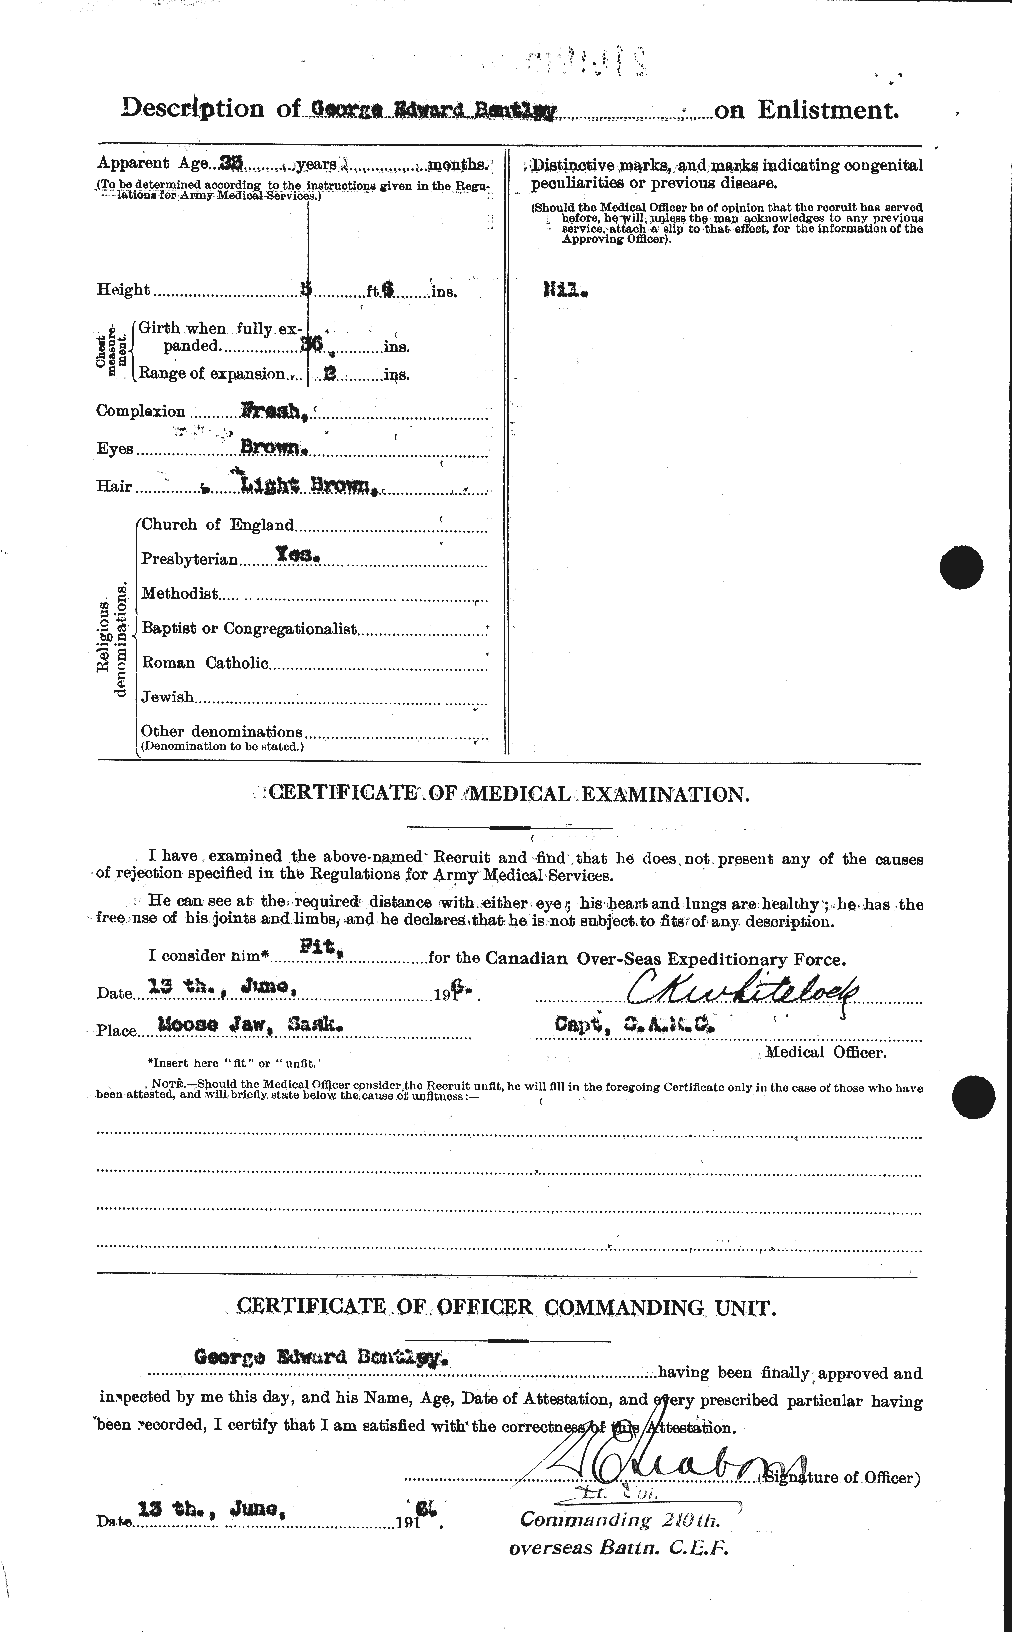 Dossiers du Personnel de la Première Guerre mondiale - CEC 237917b